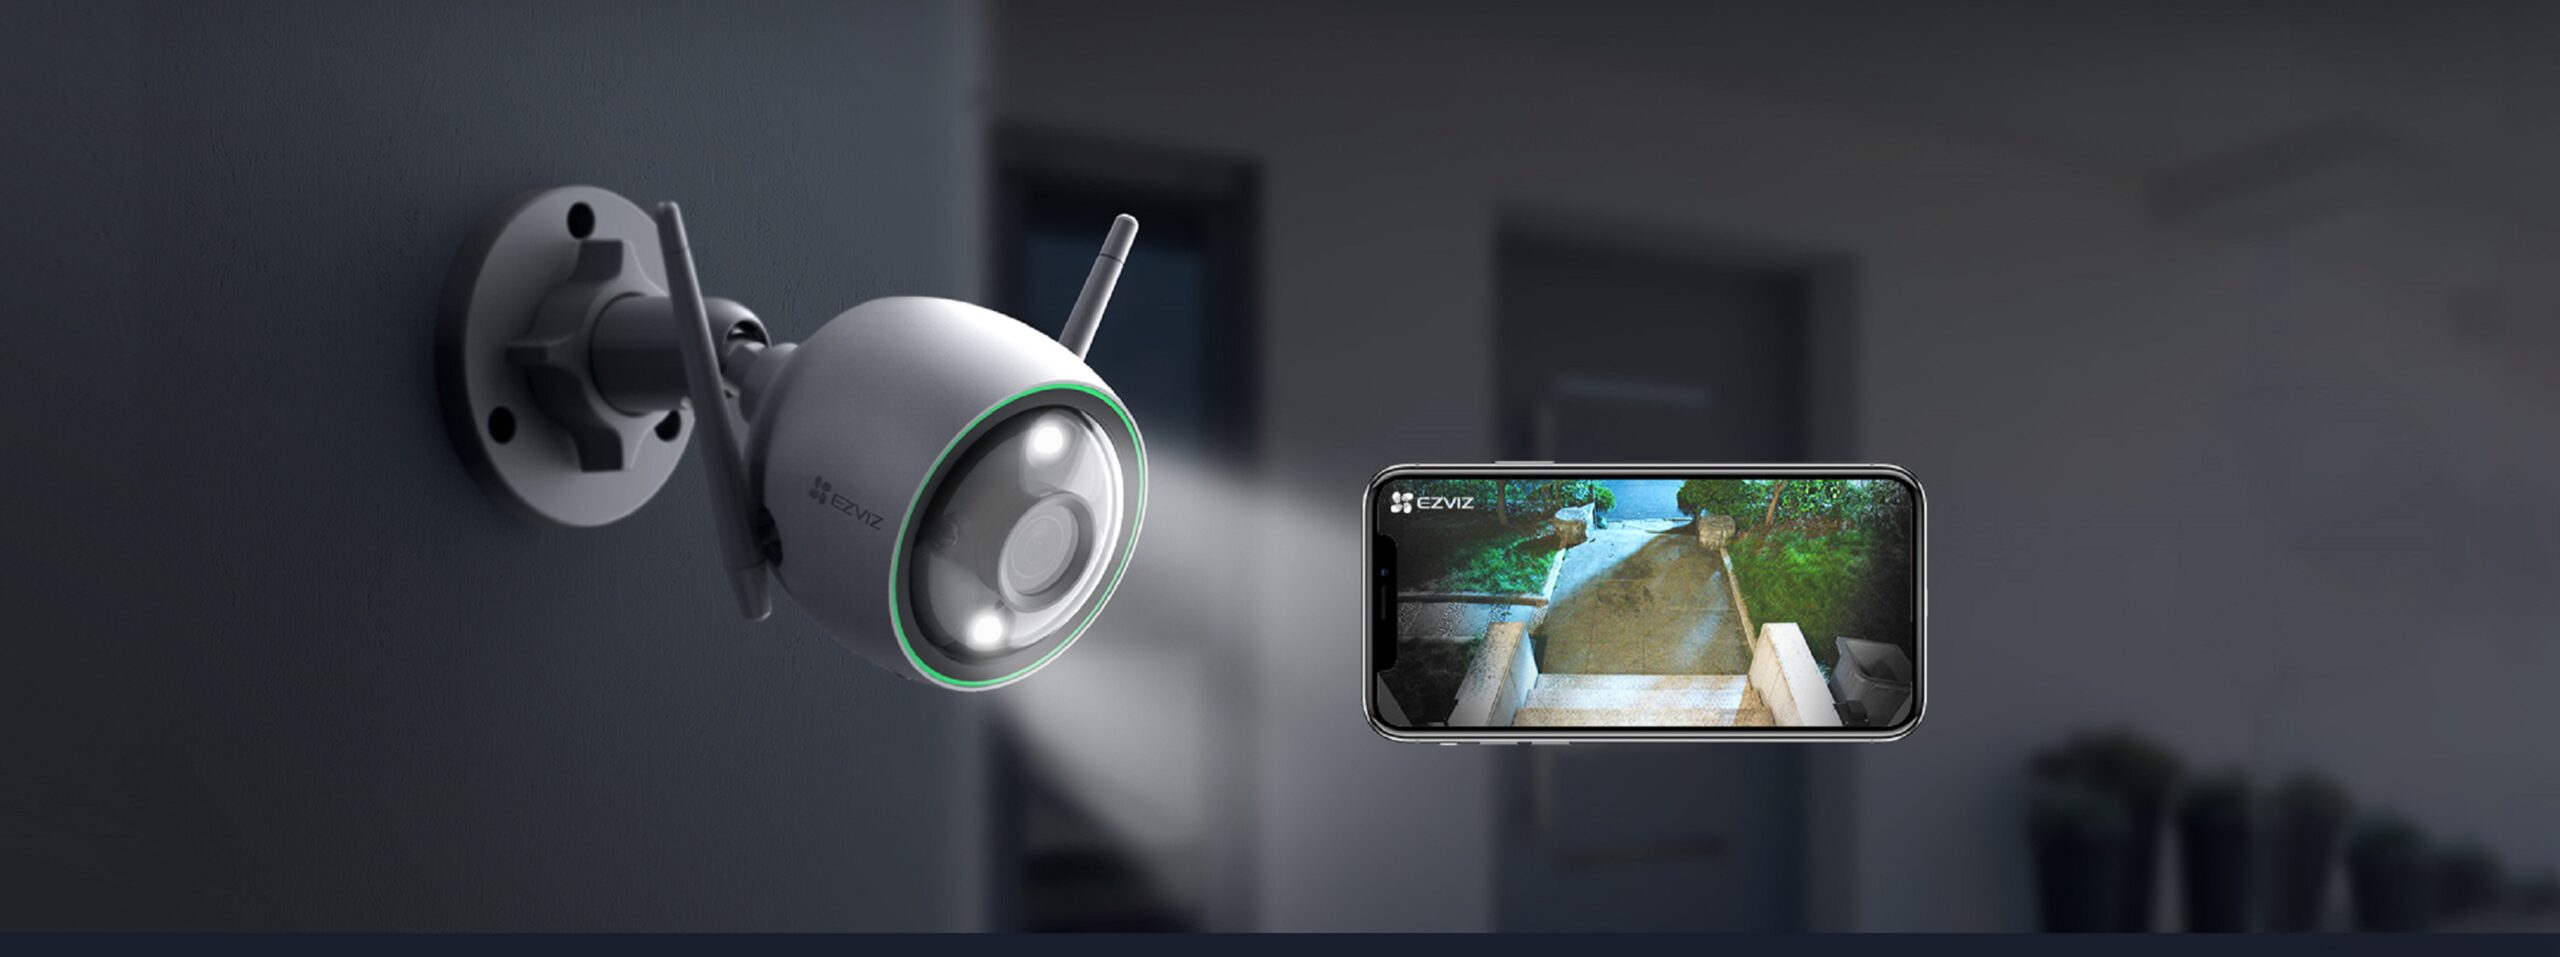 marcas como EZVIZ han desarrollado sistemas de vigilancia de última tecnología que se acomodan a las necesidades de los hogares